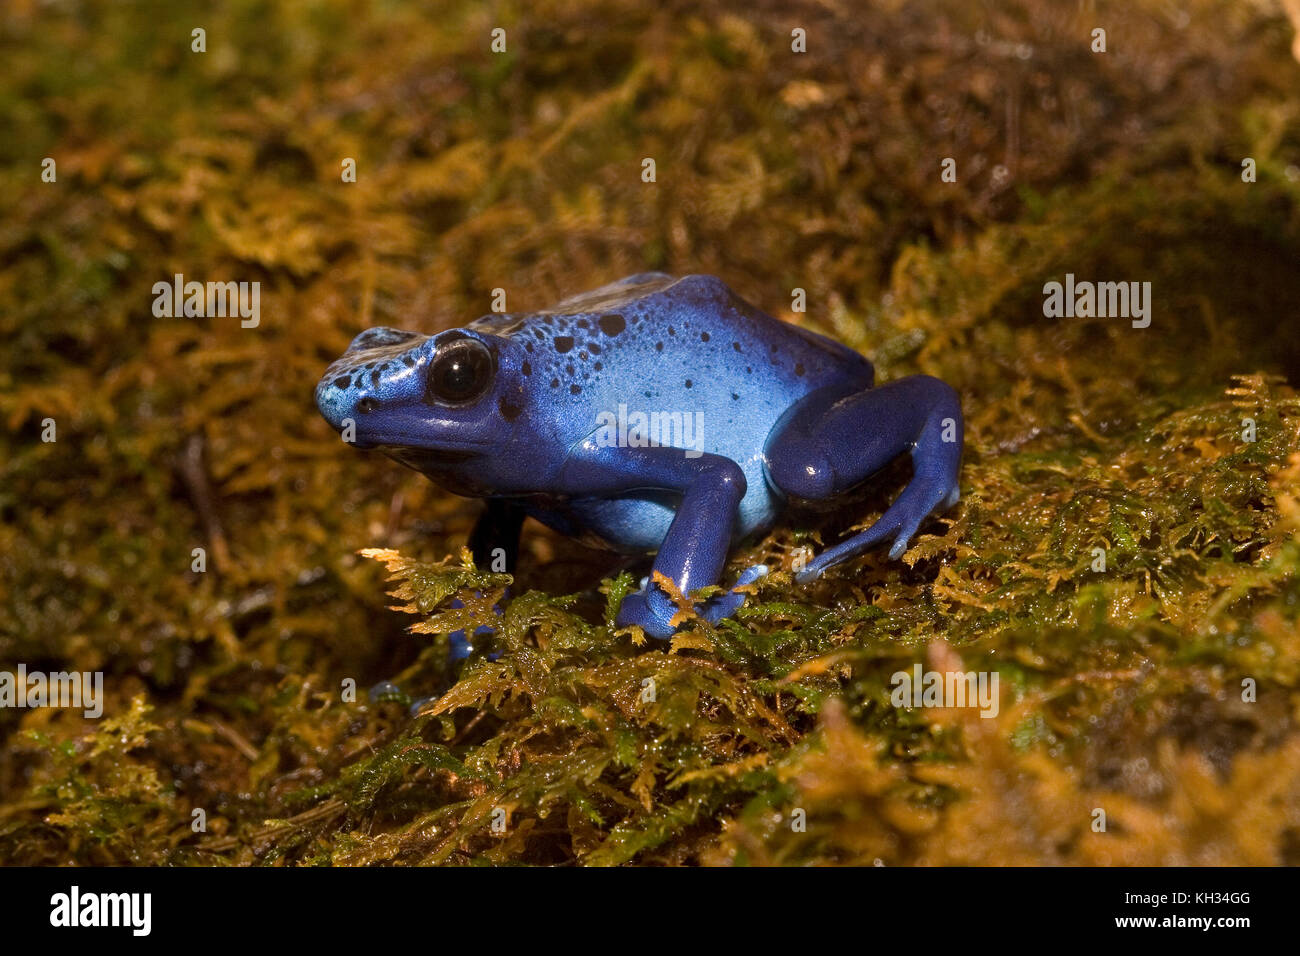 Blue Poison Dart Frog, Dendrobates azureus Stock Photo